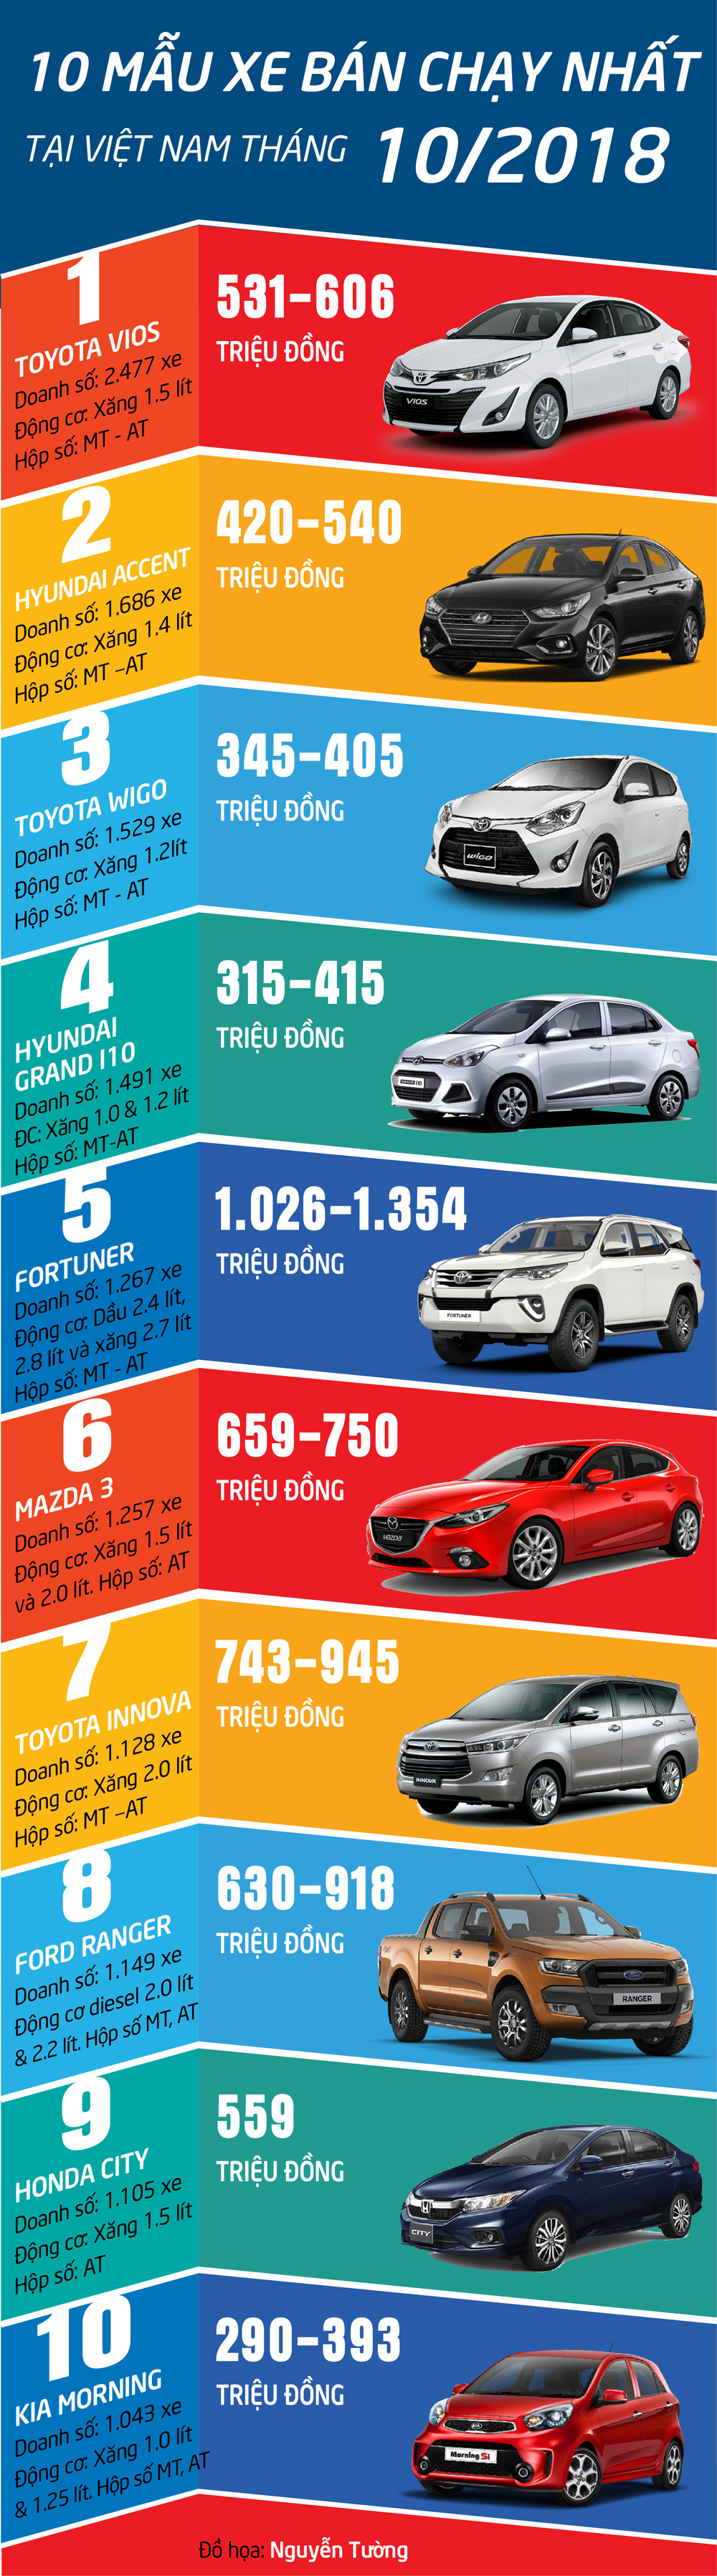 Infographic: Những mẫu ô tô bán chạy nhất tháng 10/2018 - 1